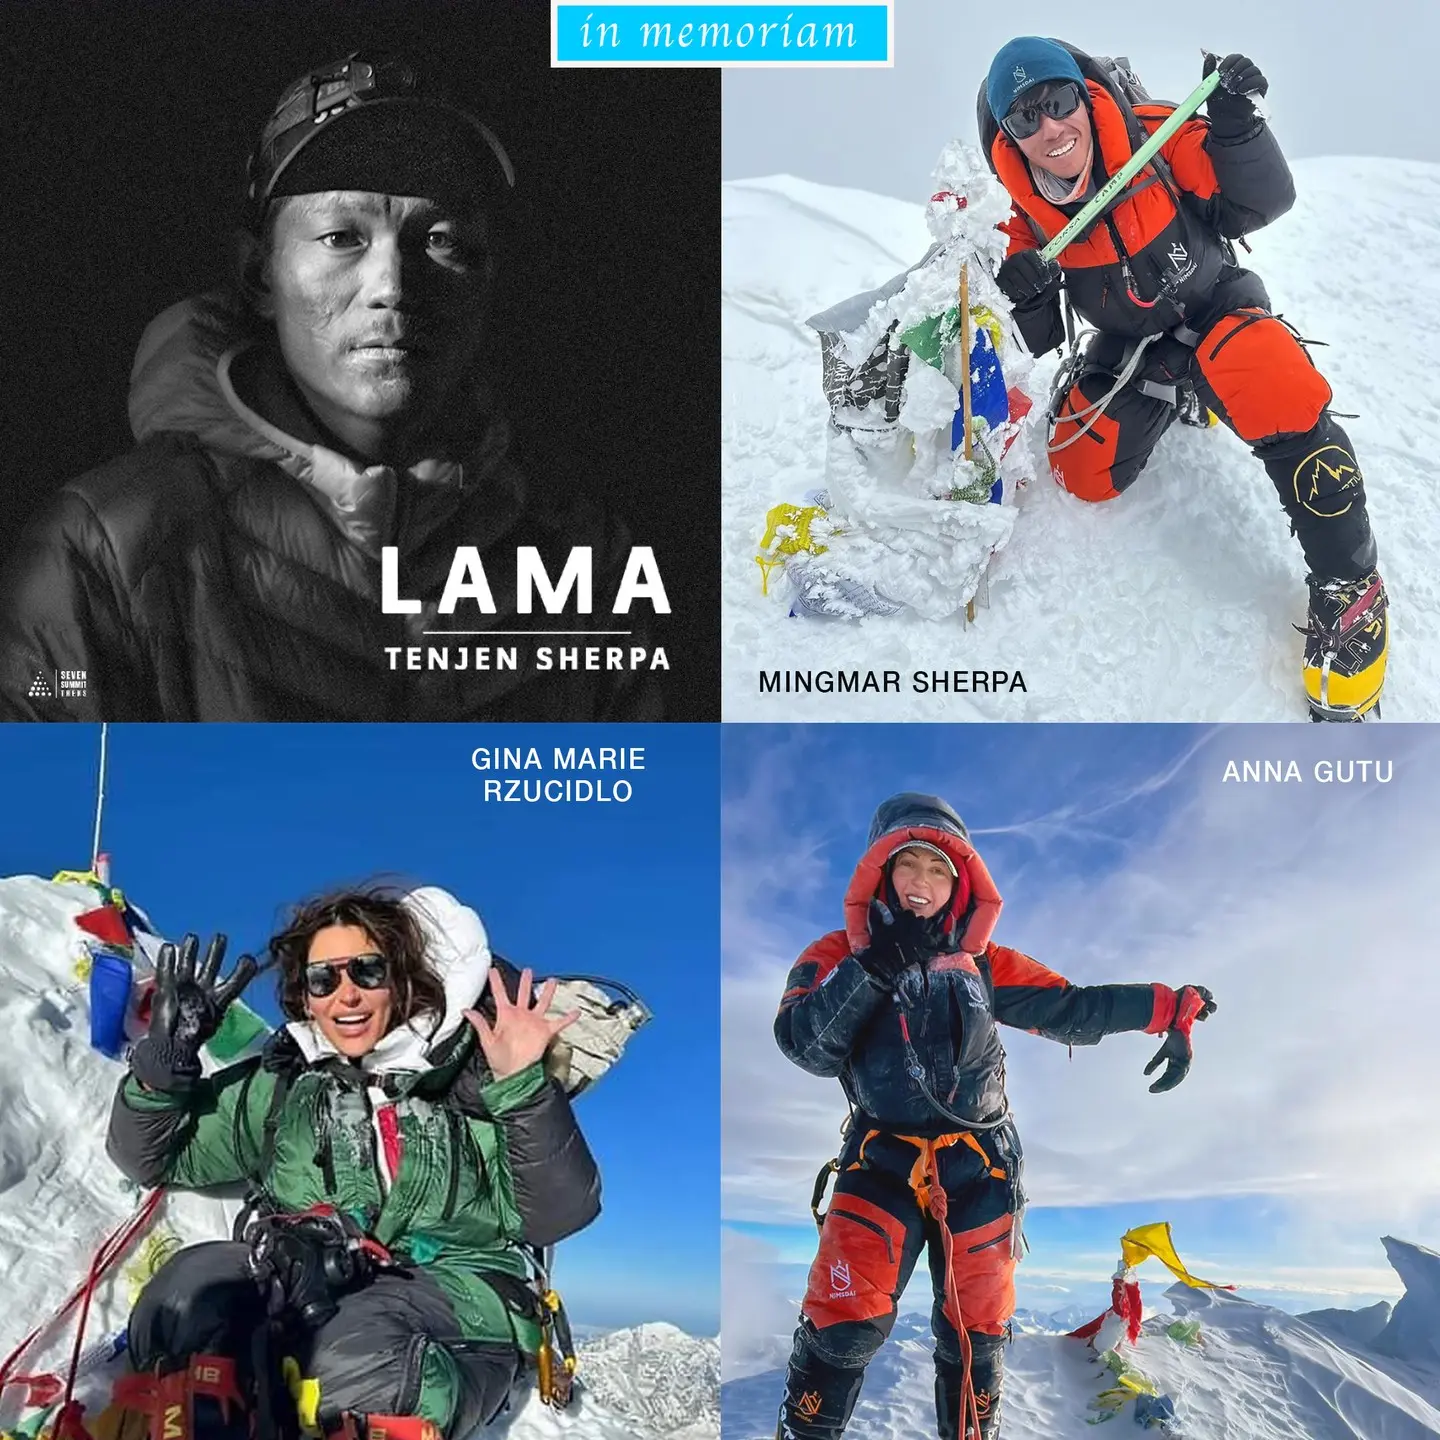 Загиблі на Шишабангмі: Анна Гуту (Anna Gutu) - американська альпіністка українського походження та її непальський гід, Мінґмар Шерпа (Mingmar Sherpa).<br>Зниклі безвісти та також об